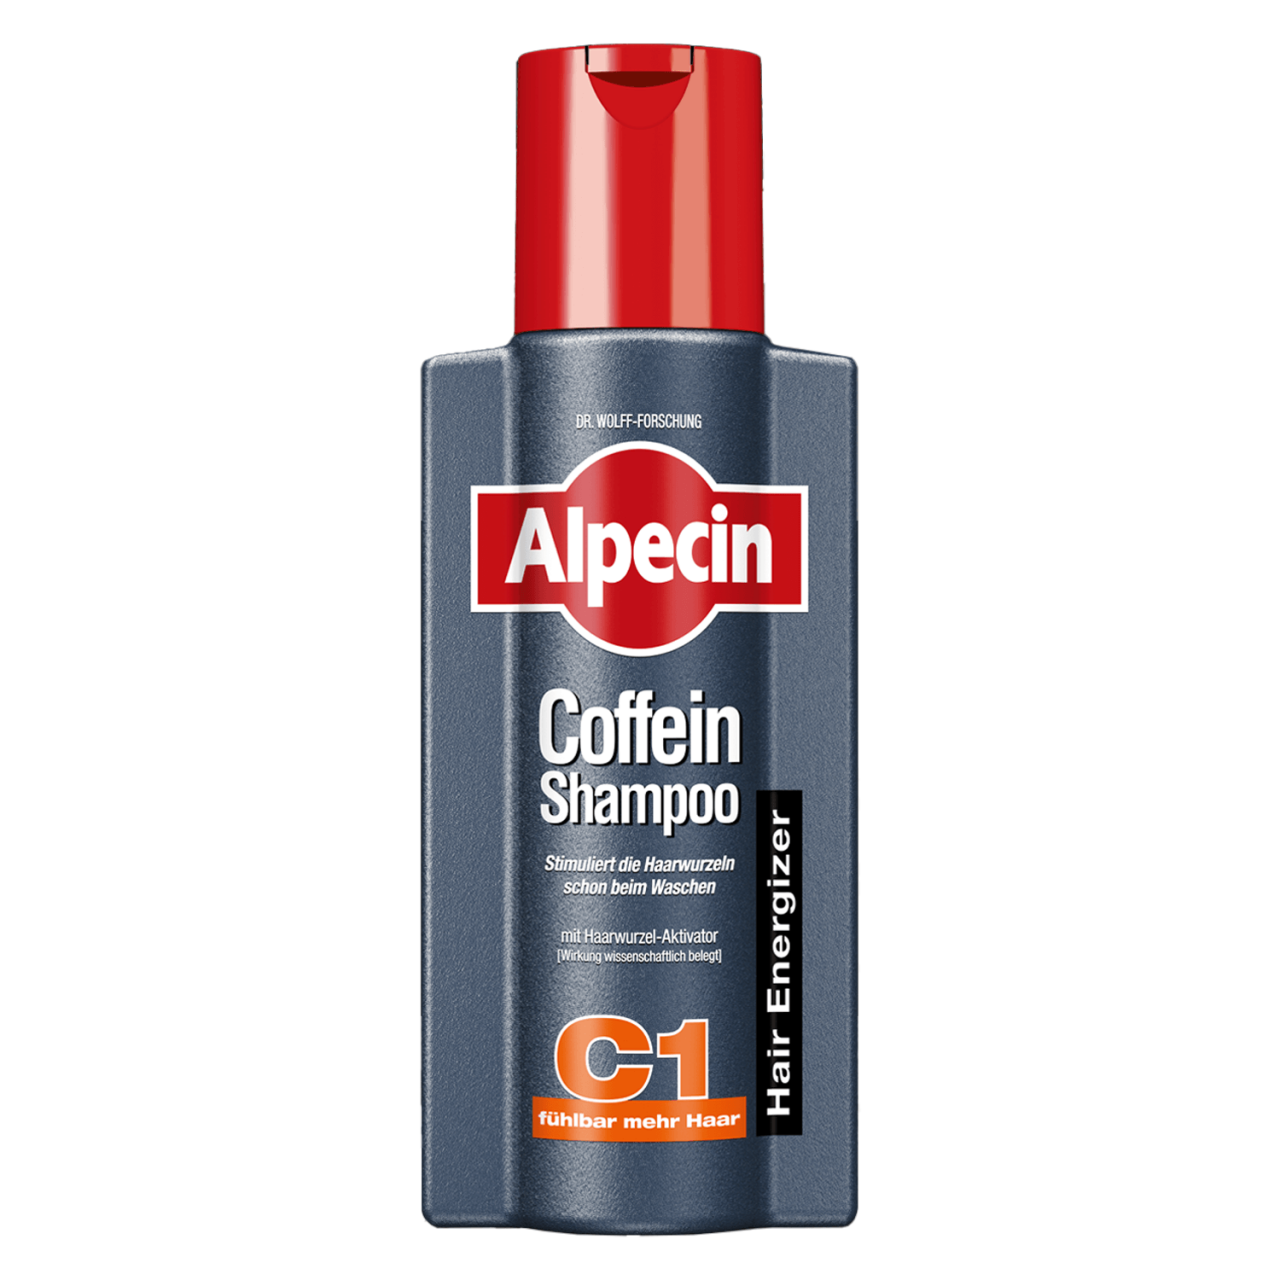 Alpecin - Coffein-Shampoo C1 von Alpecin